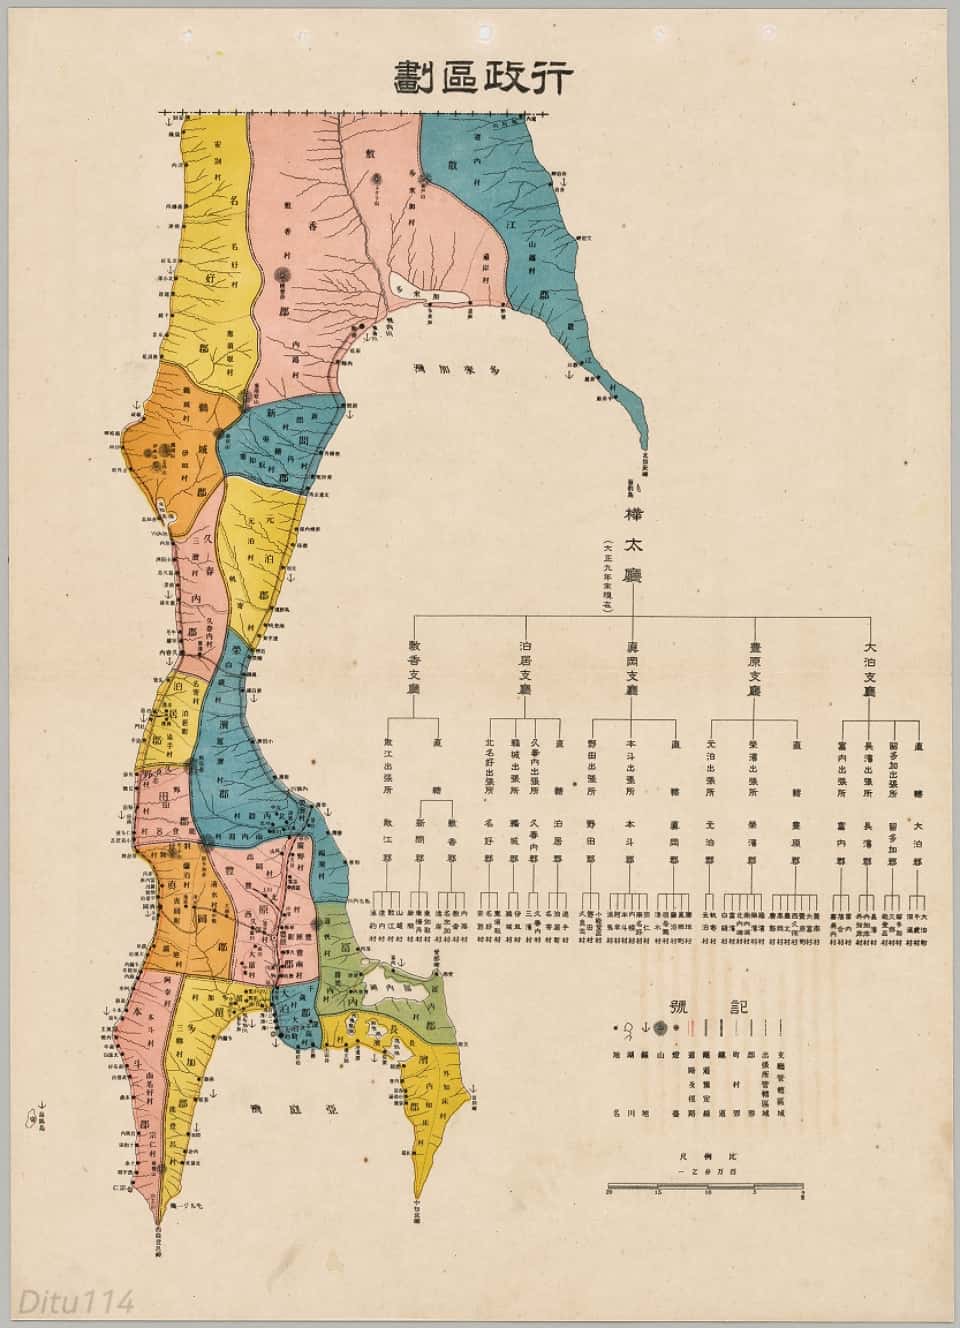 1920年桦太行政区划地图.jpg